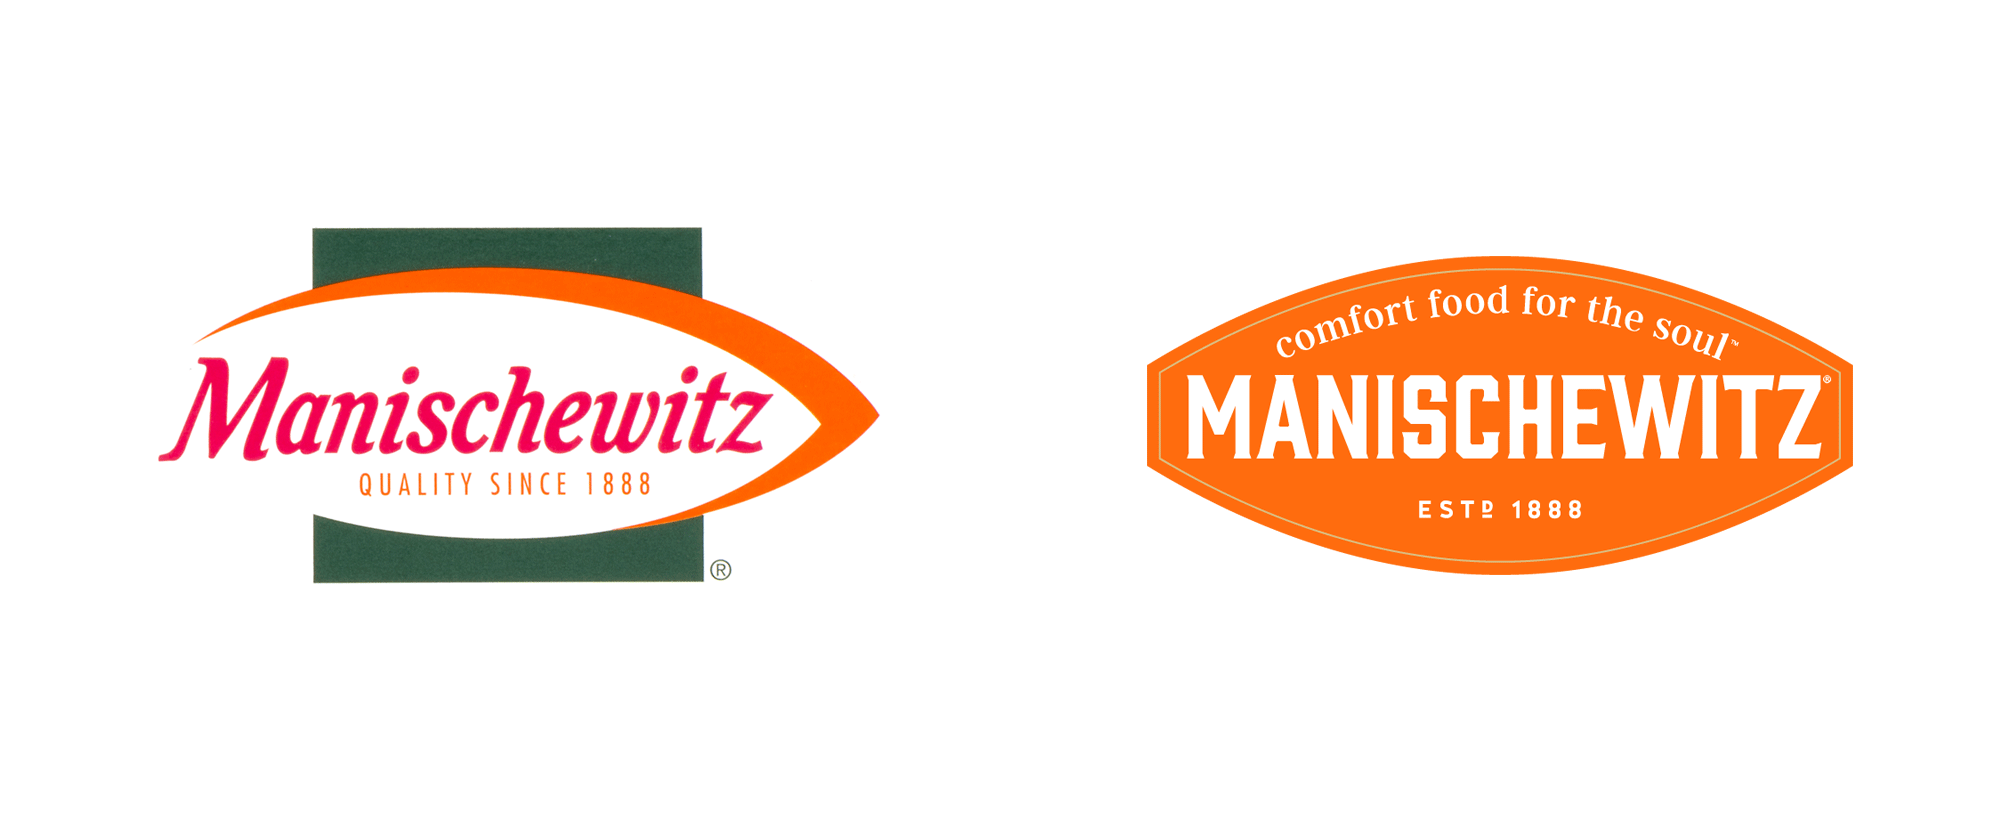 Manischewitz Logo - Brand New: New Logo for Manischewitz